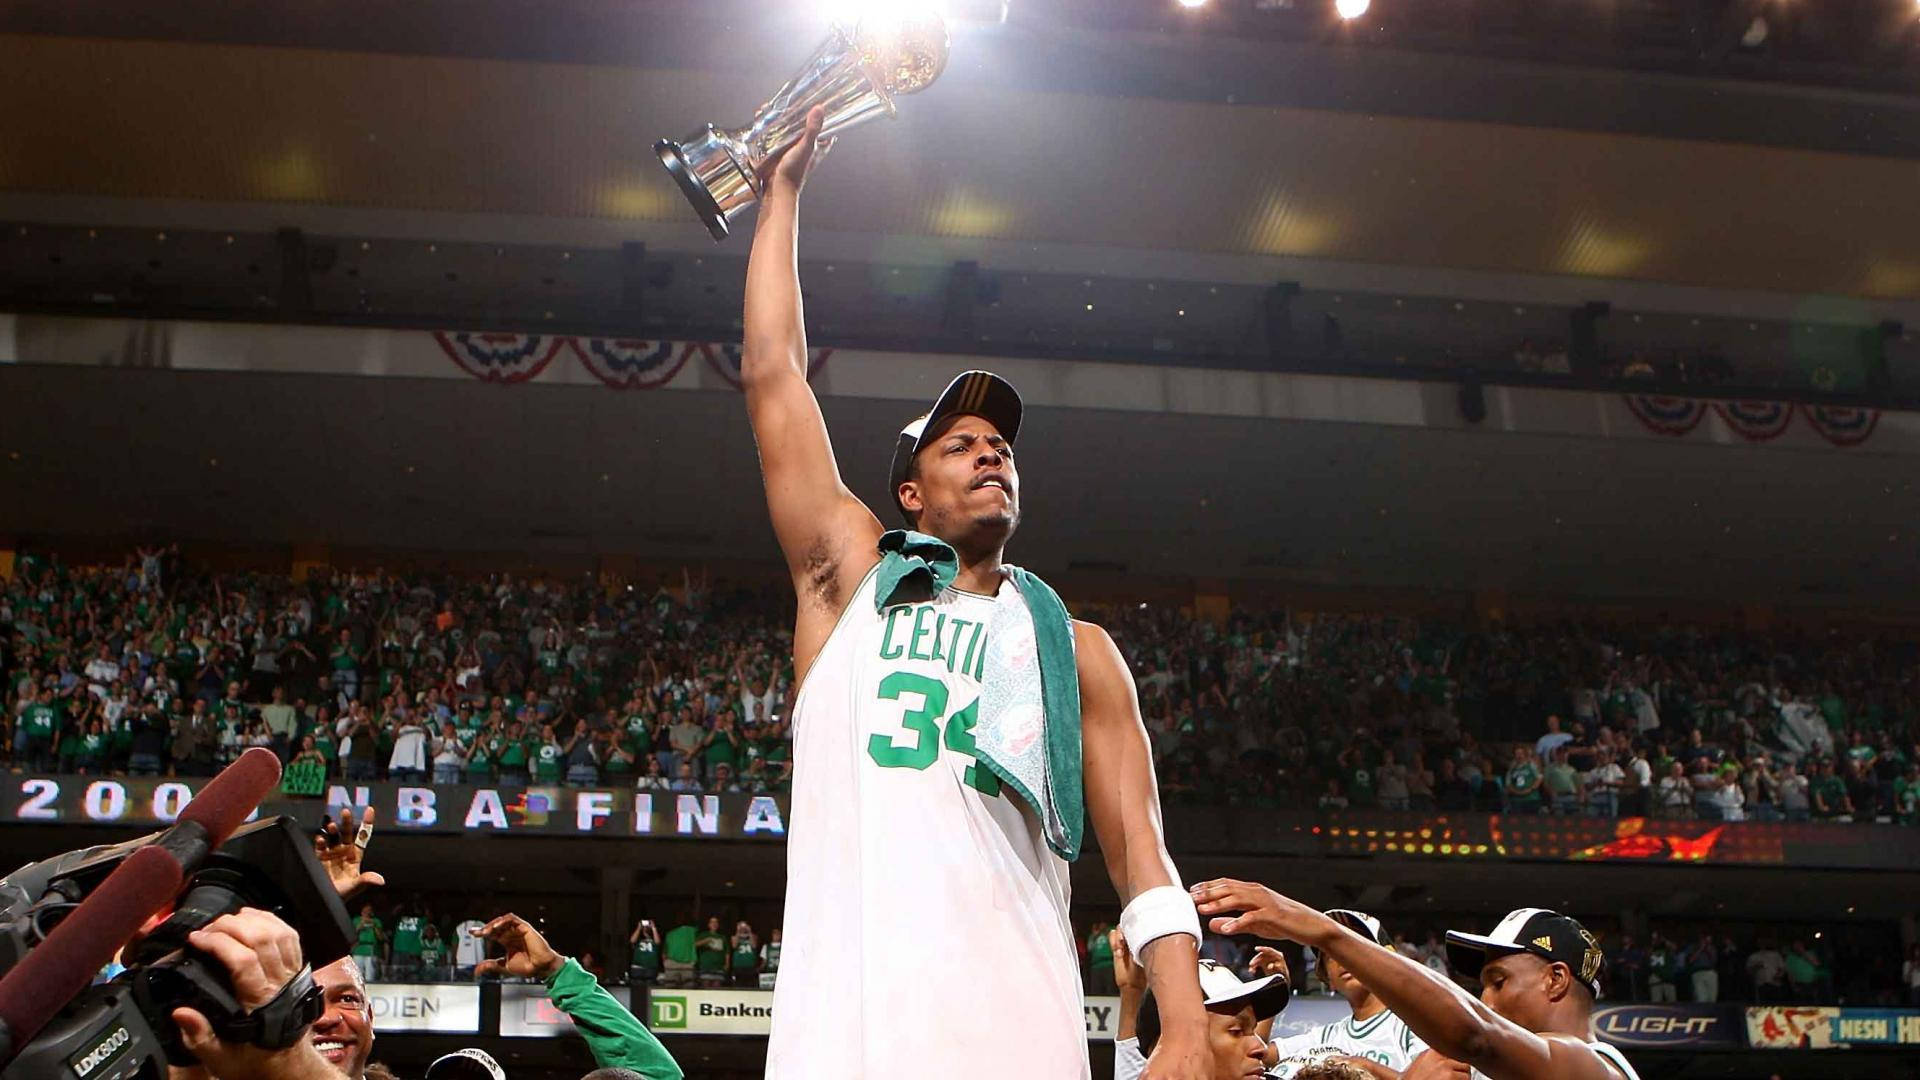 Nba Finals Celtics Championship